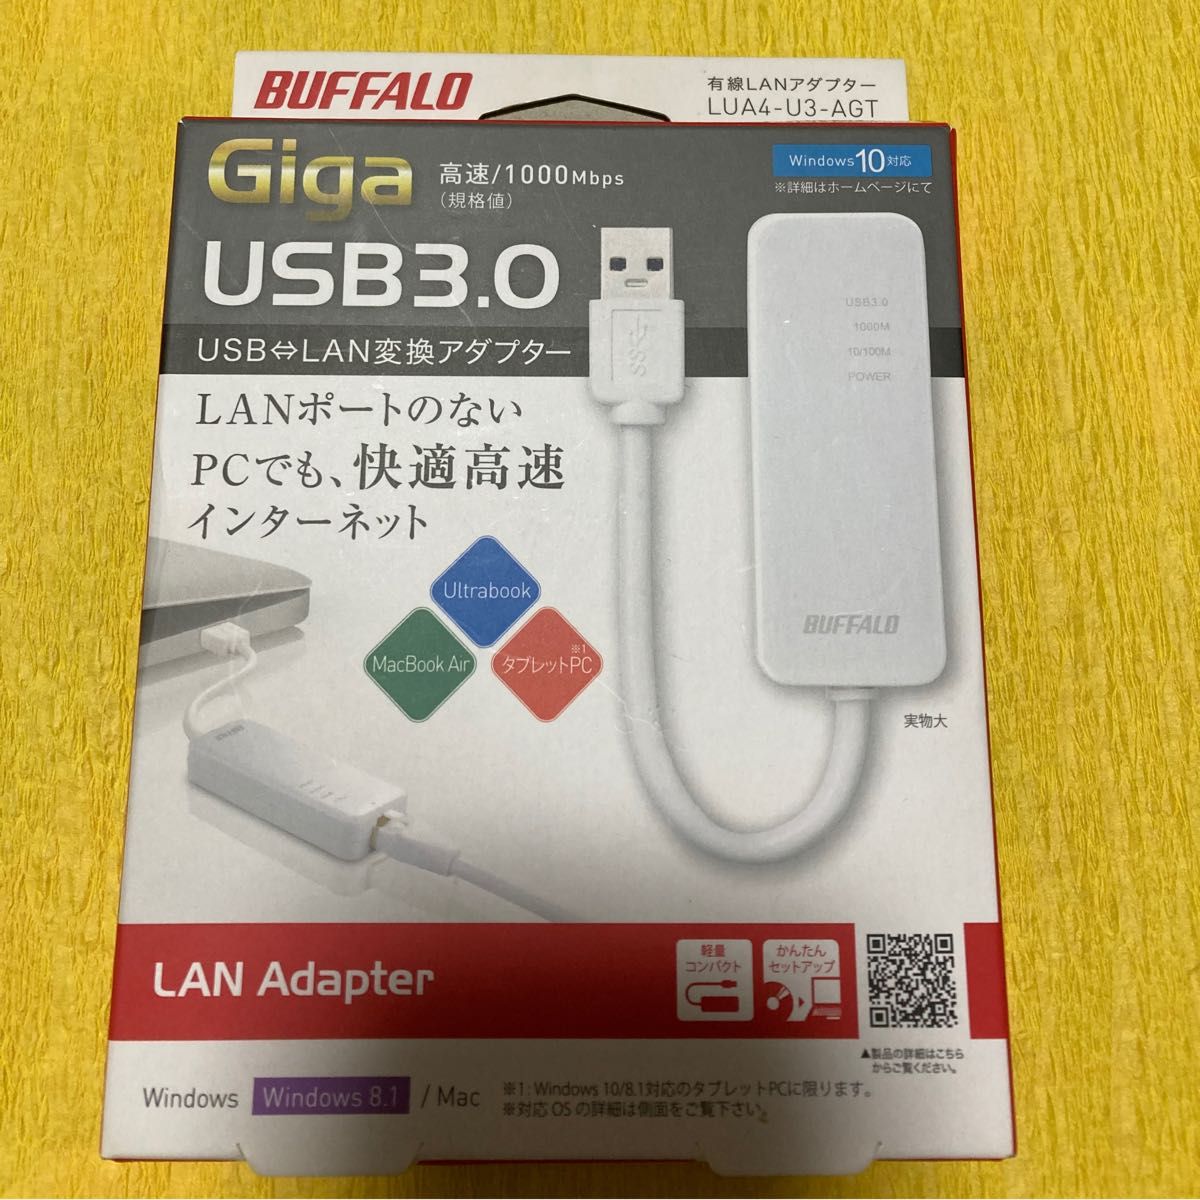 バッファロー BUFFALO 有線LANアダプター LUA4-U3-AGT Giga USB3.0対応 switch